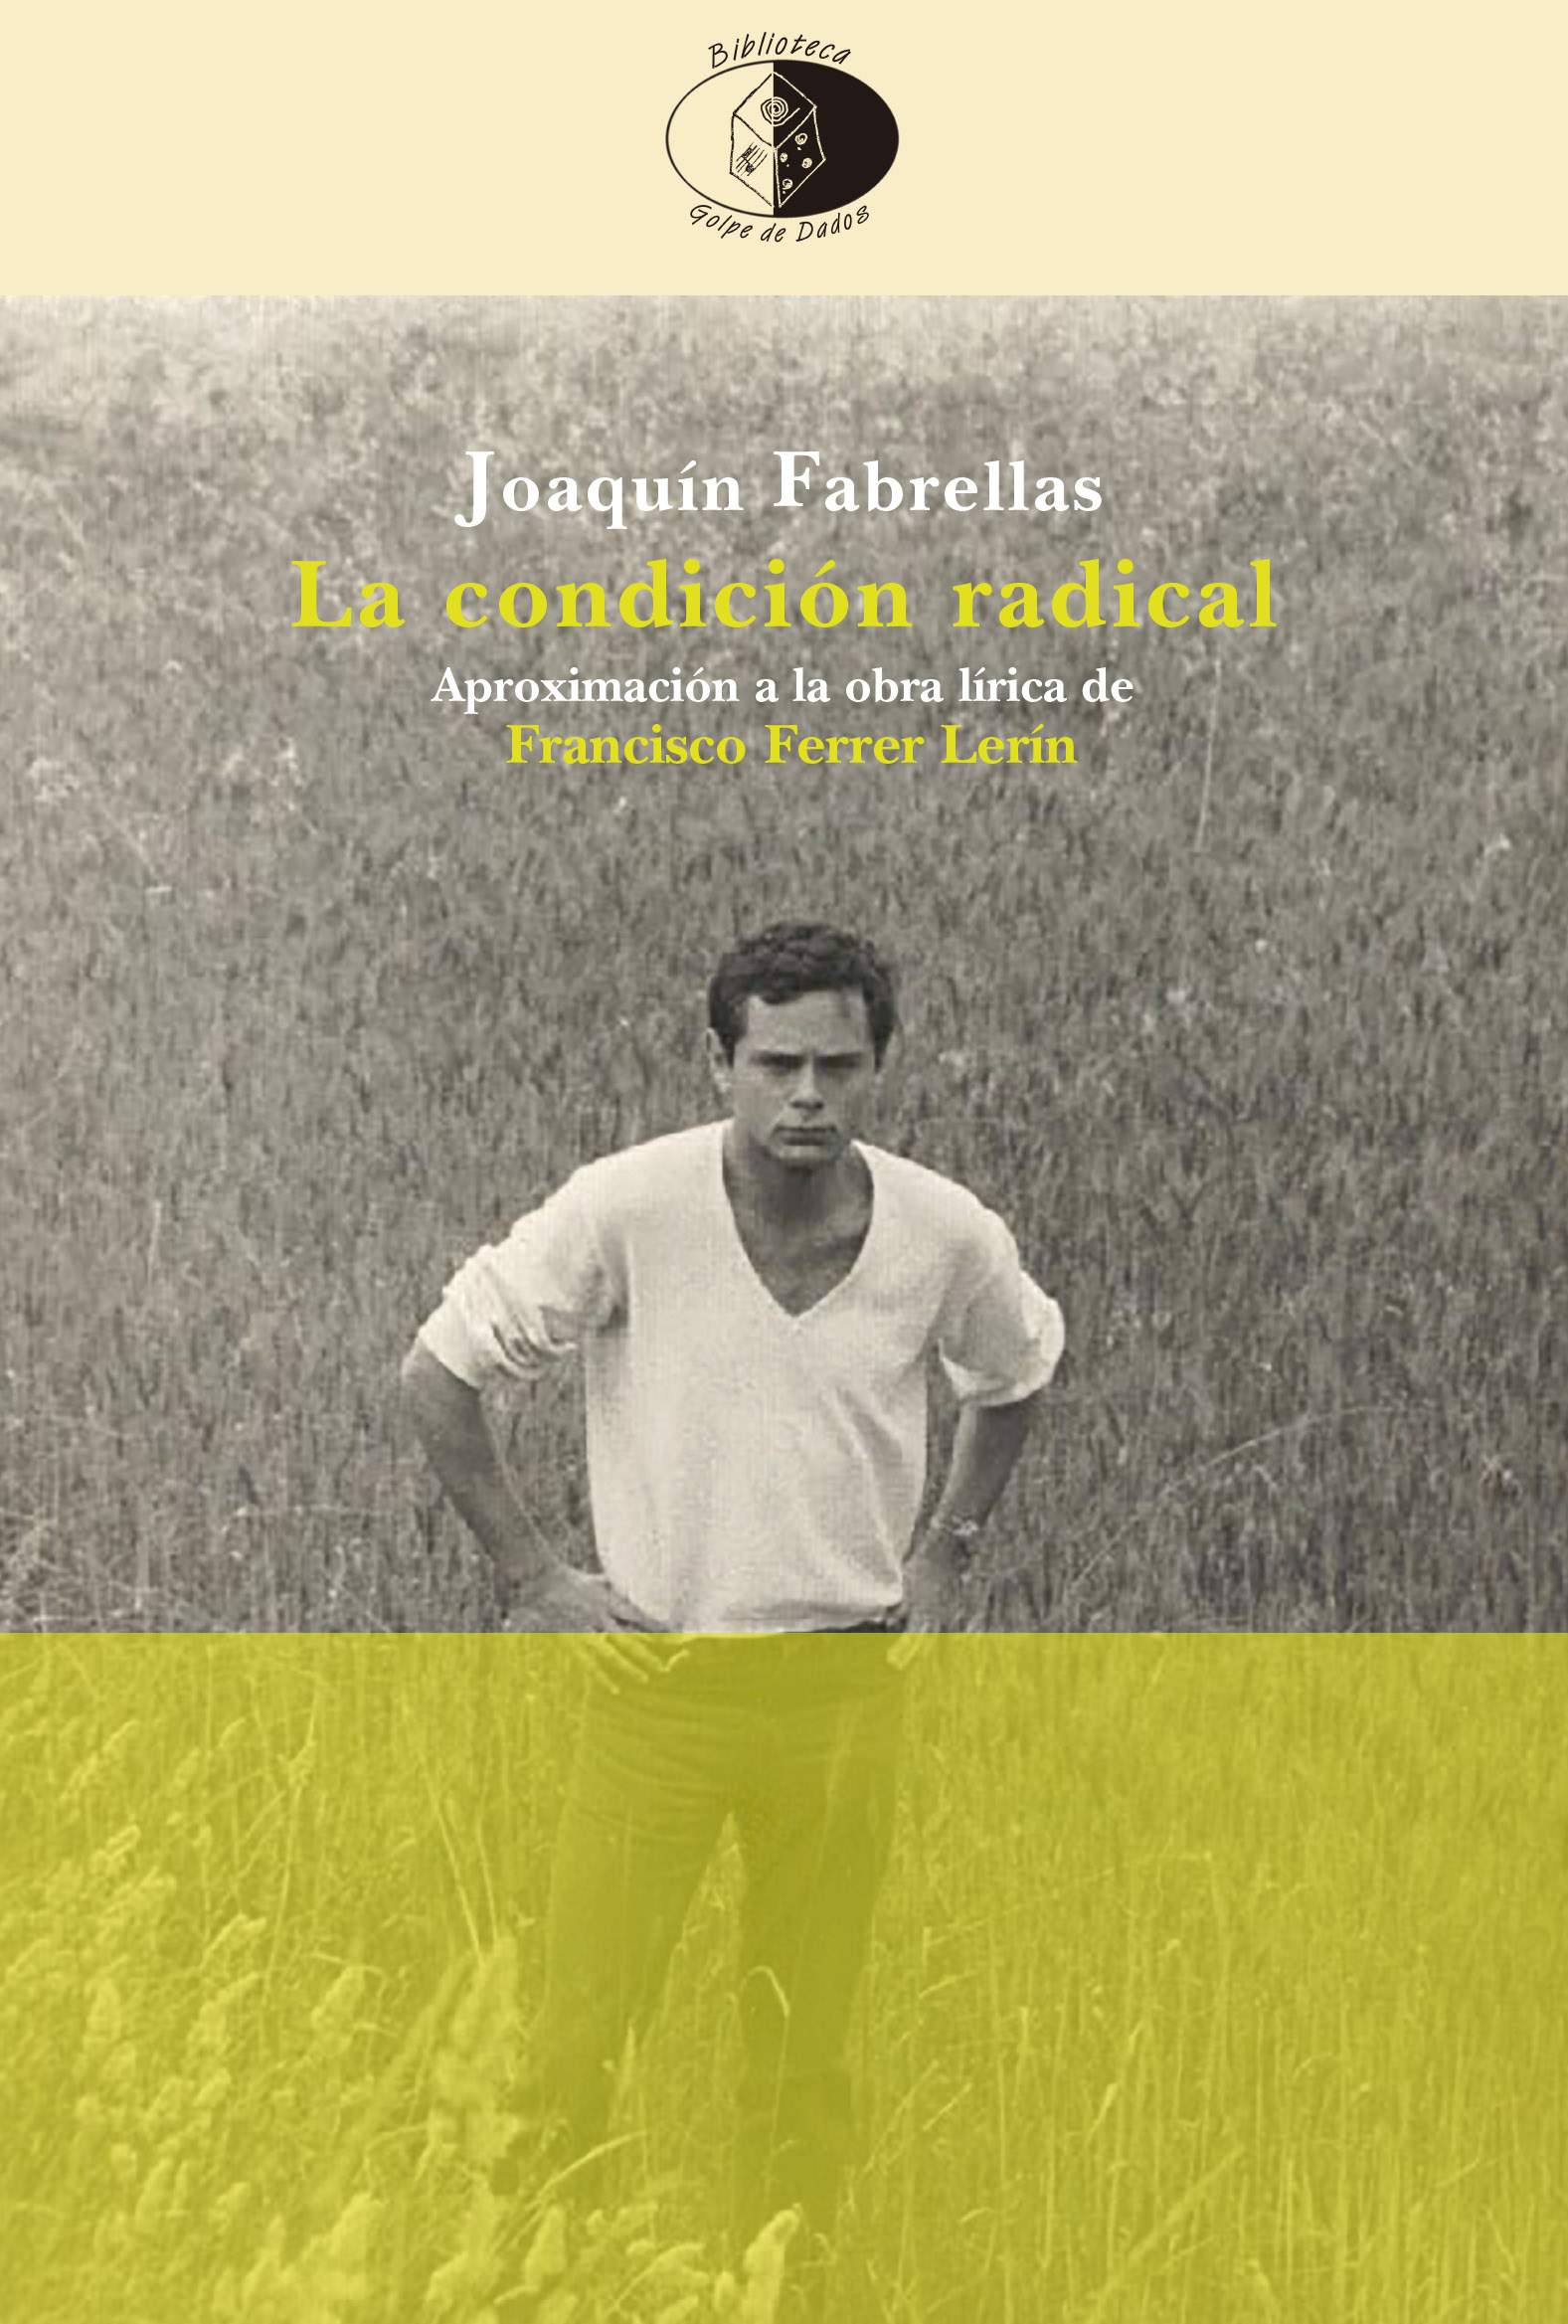 Joaquín Fabrellas entrevistado en Ser Radio Jaén por La condición radical. Aproximación a la obra lírica de Francisco Ferrer Lerín